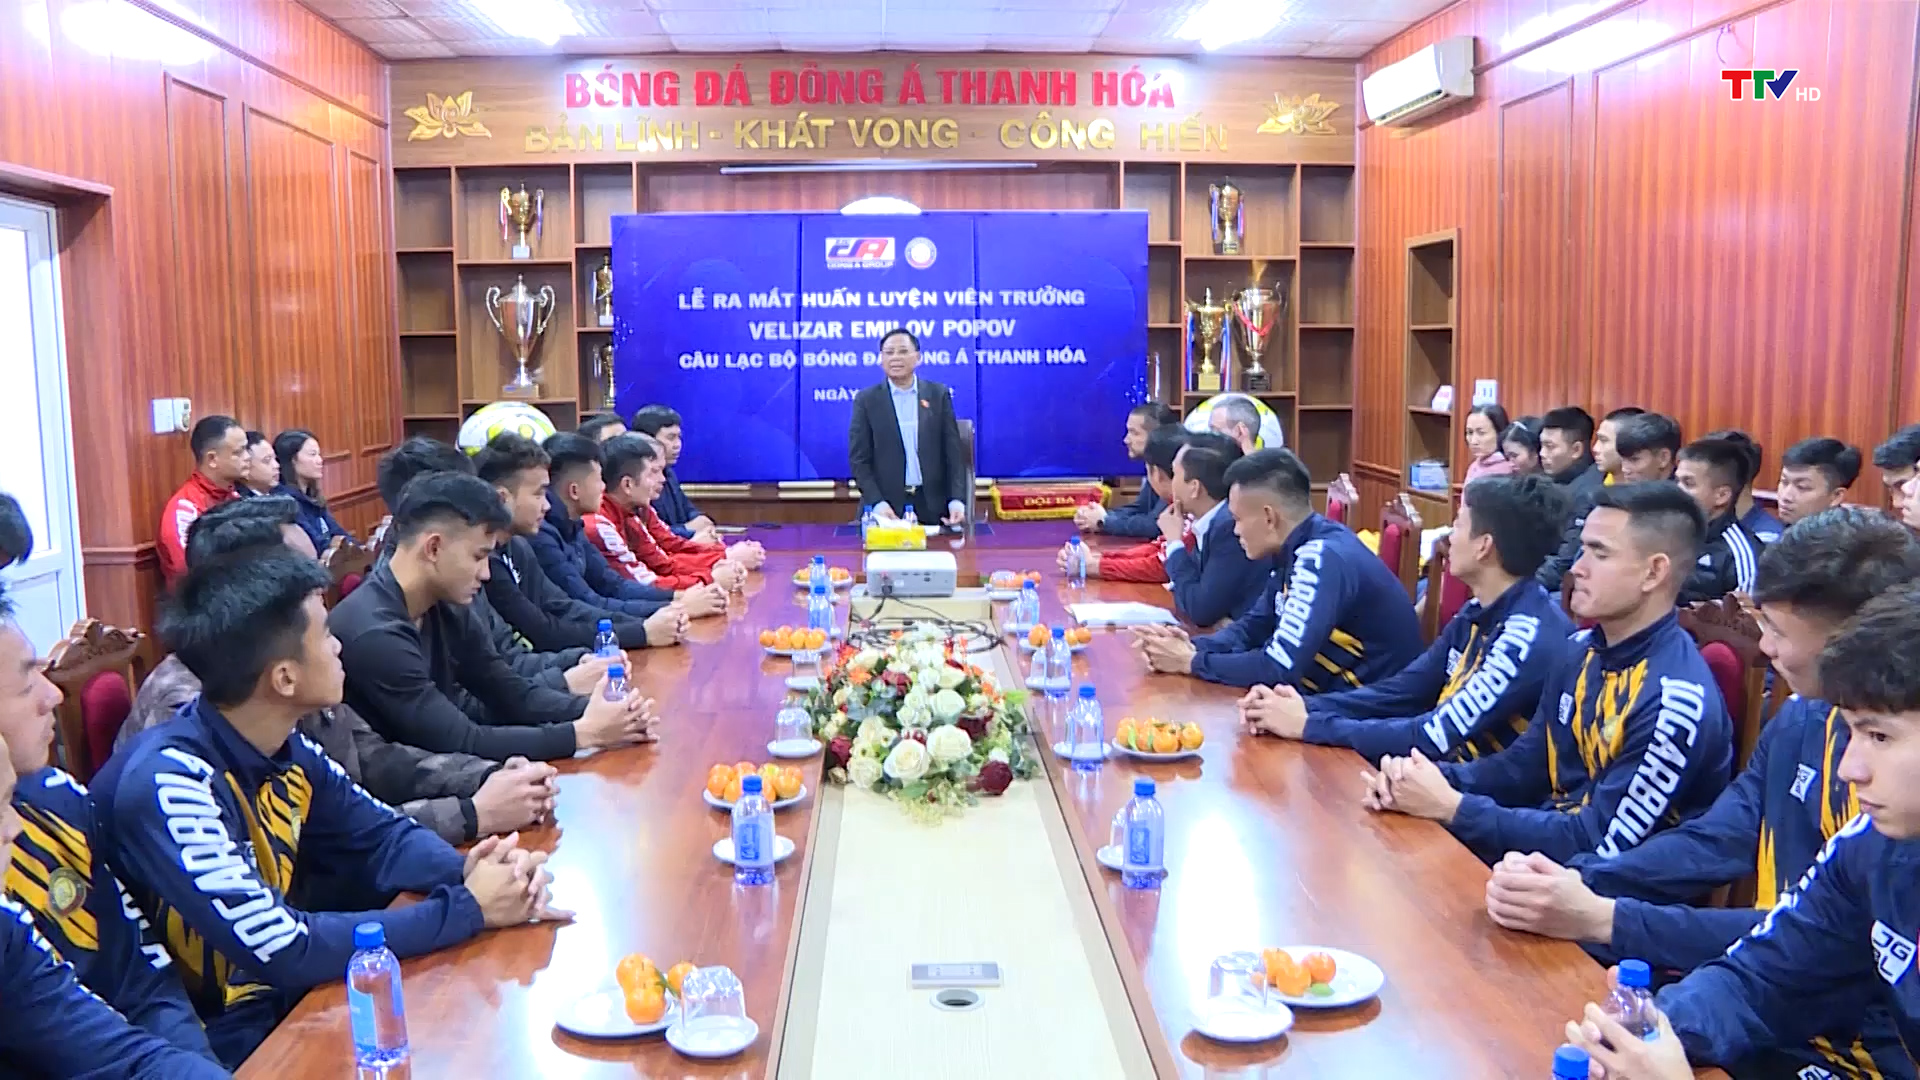 Câu lạc bộ bóng đá Đông Á Thanh Hoá chính thức ra mắt huấn luyện viên trưởng và hội quân trở lại cho mùa giải 2023 - Ảnh 2.